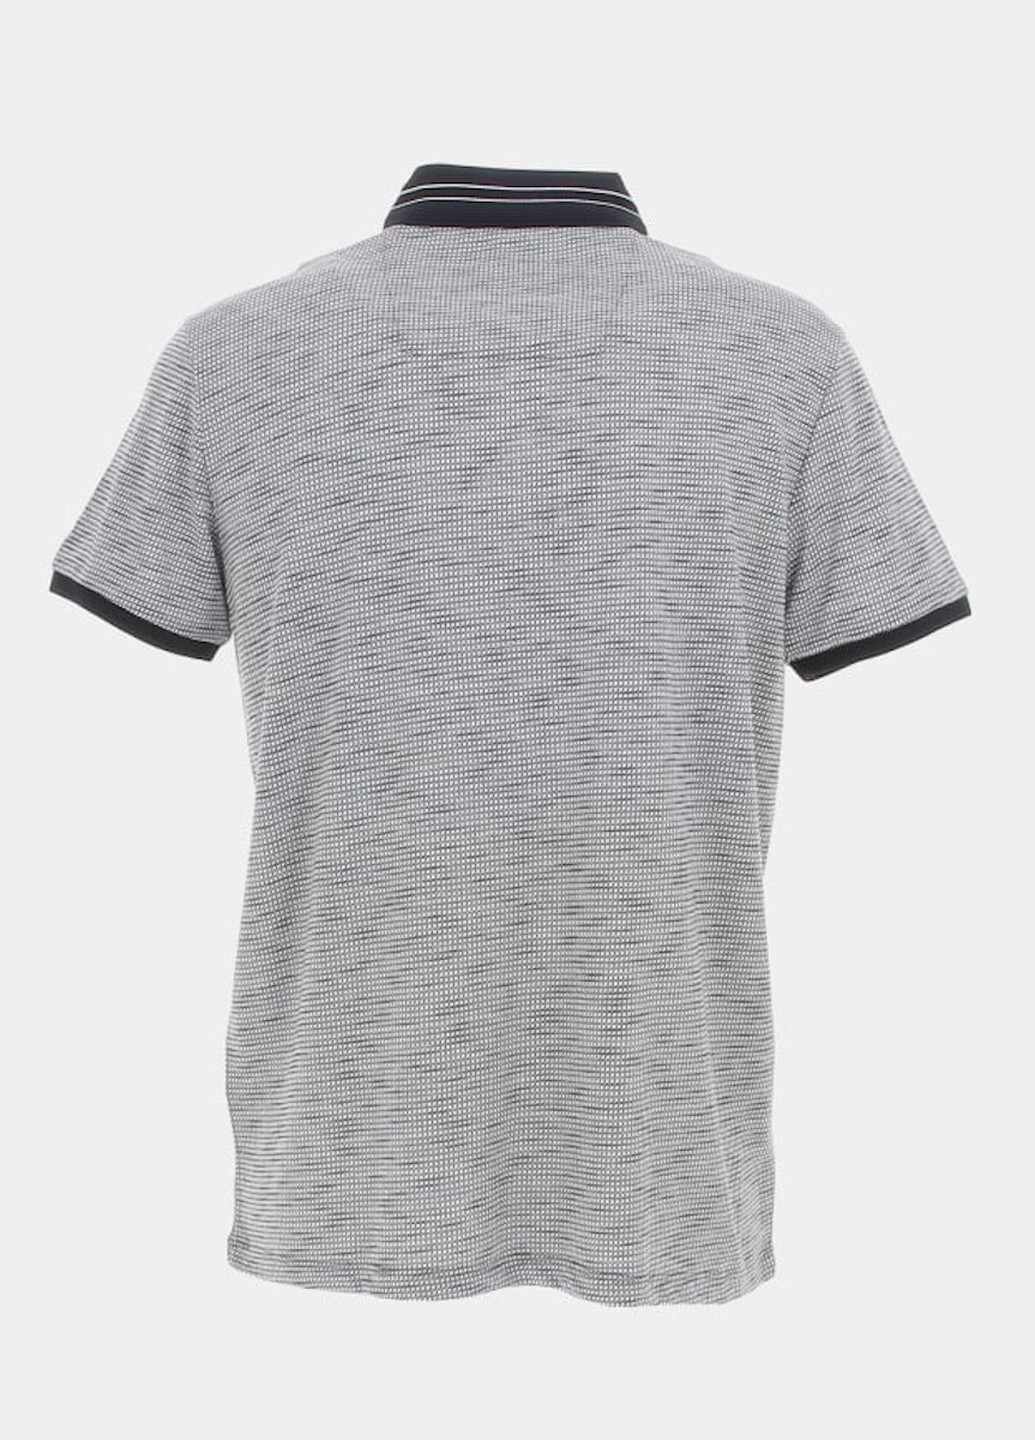 Черно-белая футболка-поло для мужчин Benson & Cherry с геометрическим узором